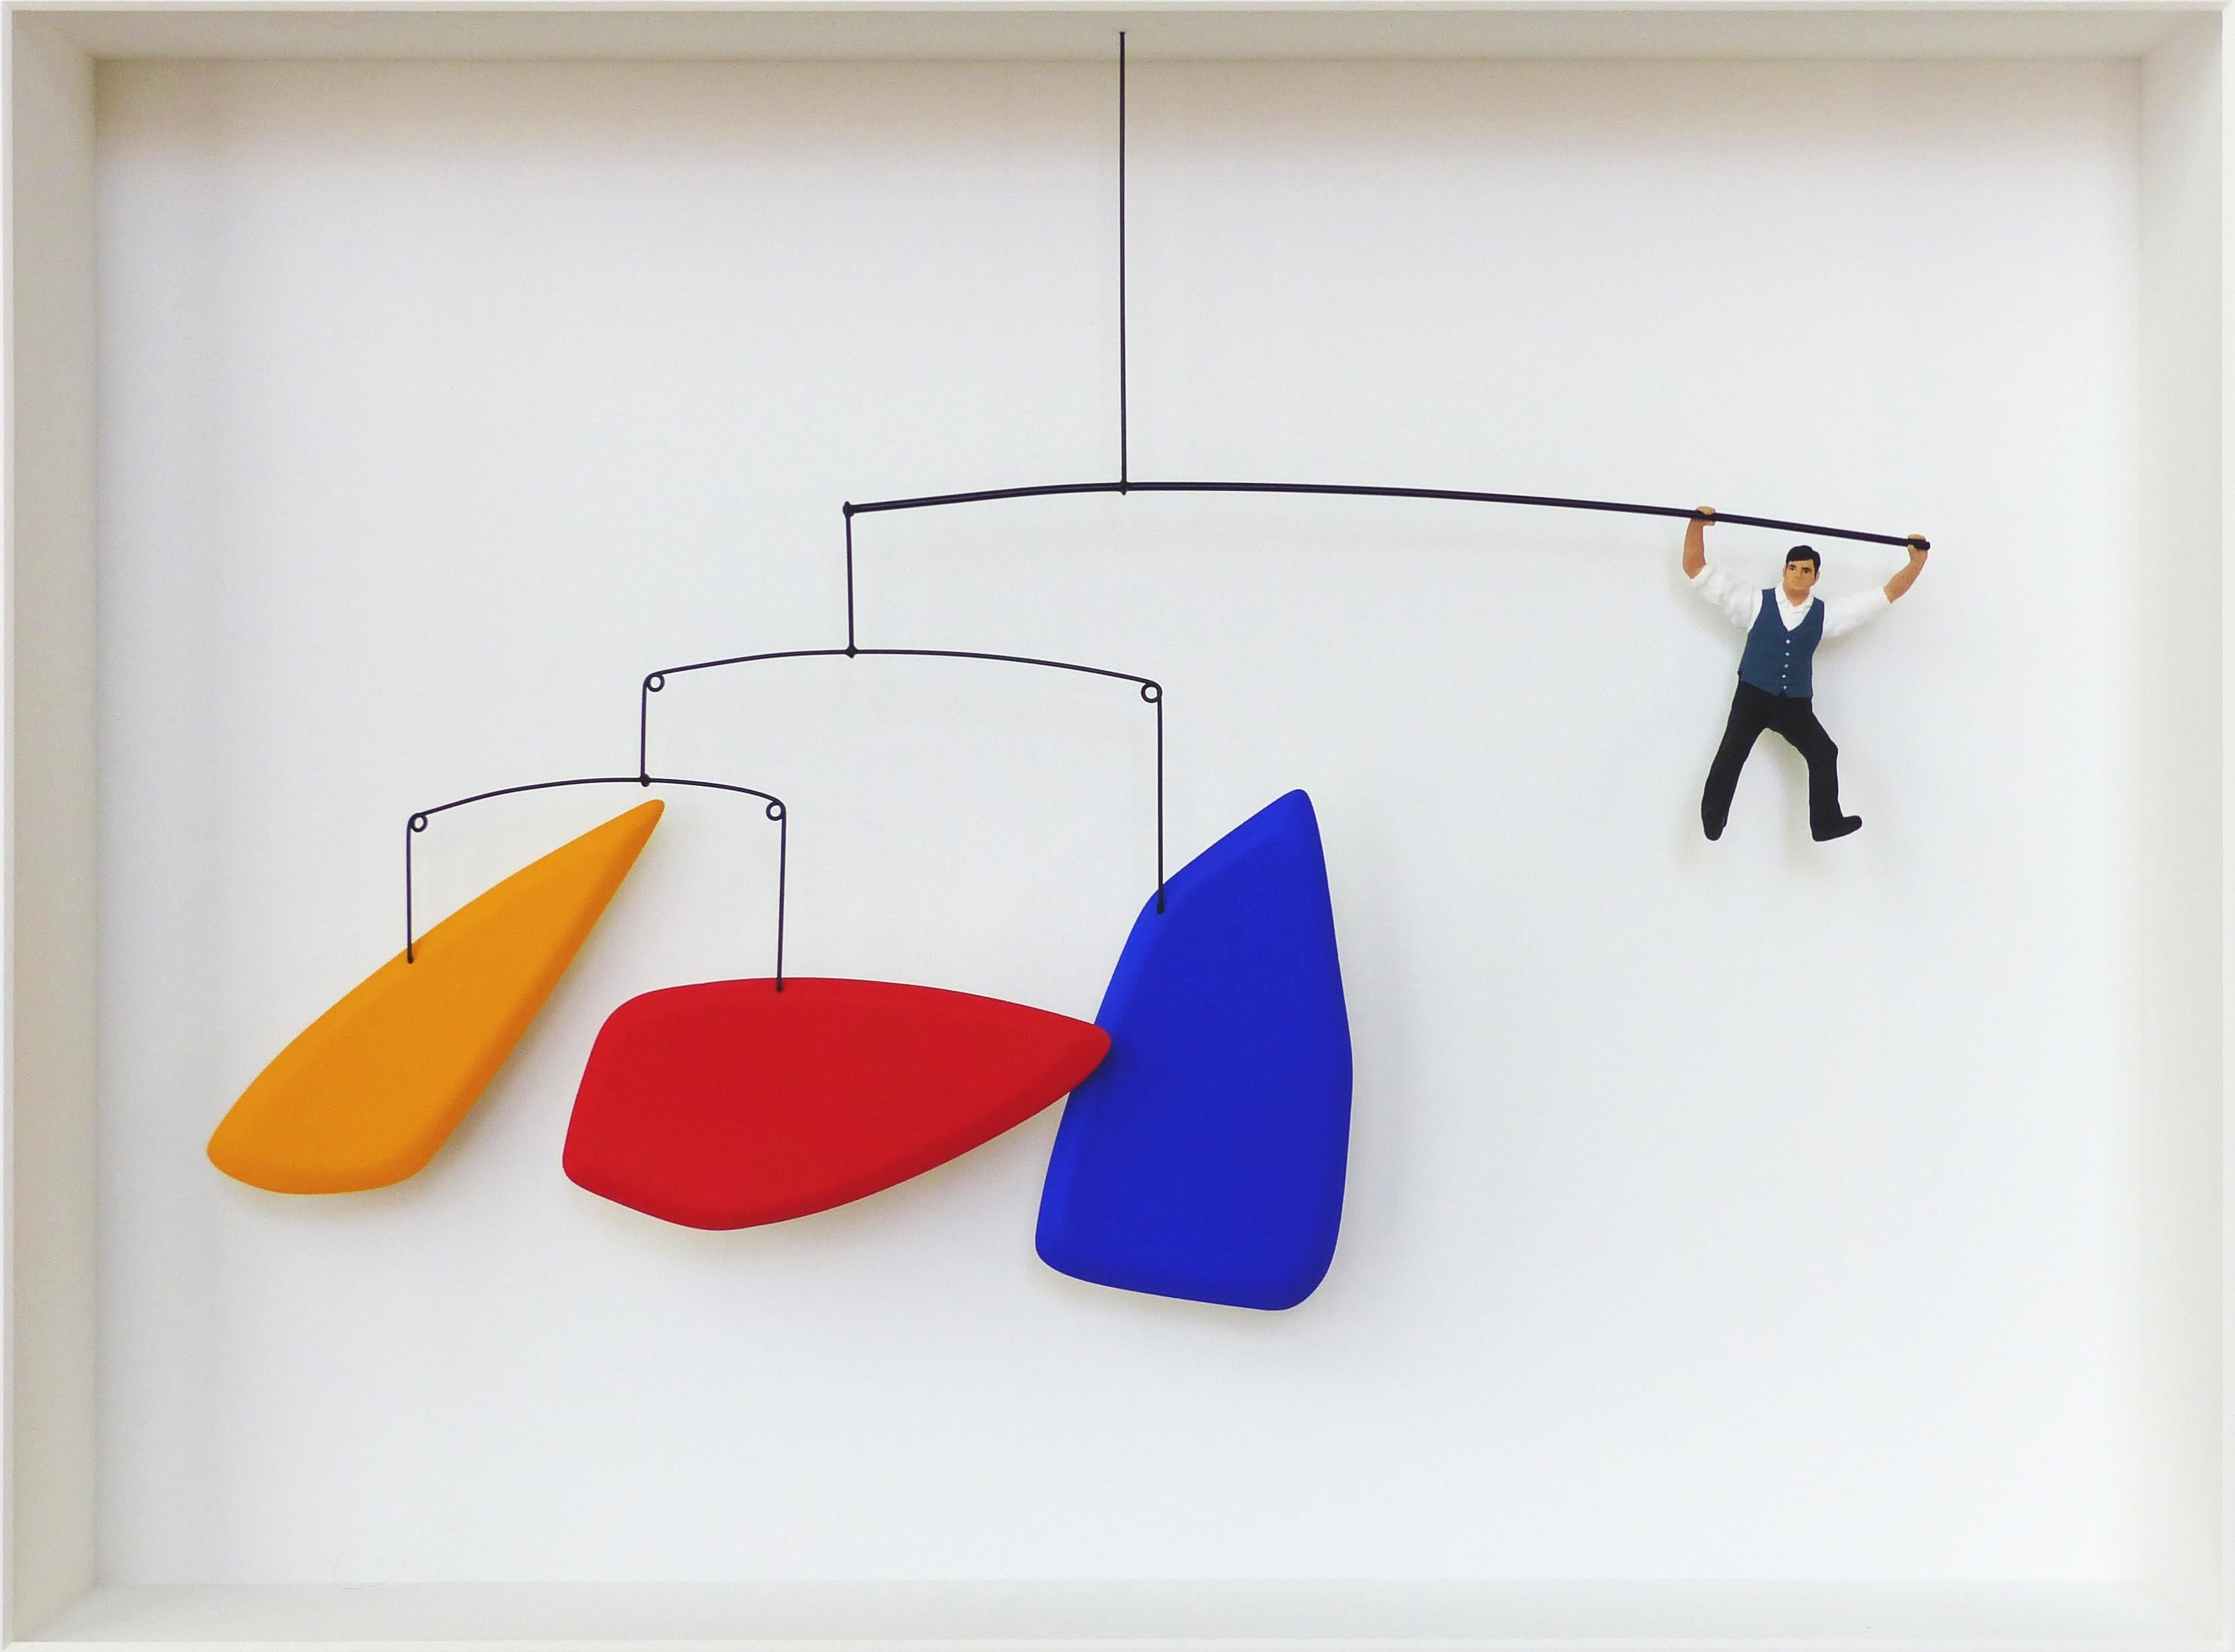 Hommage an Calder - zeitgenössisches Kunstwerk, Design-Hommage an Alexander Calder  – Mixed Media Art von Volker Kuhn